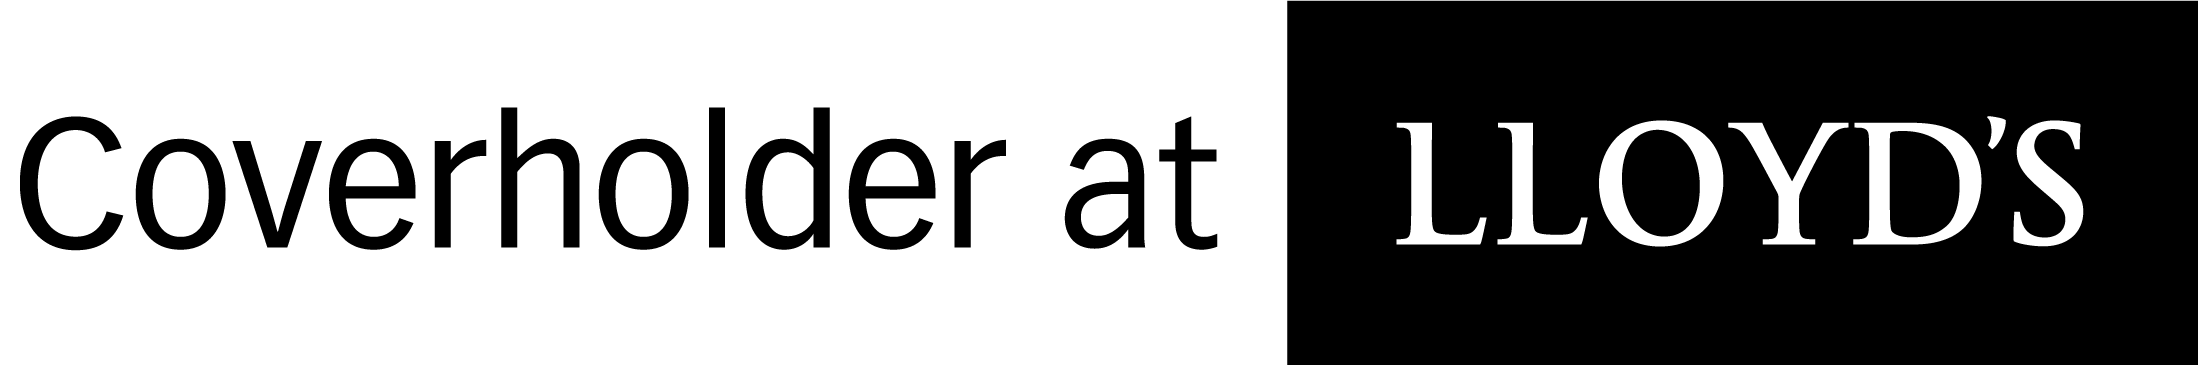 Coverholder at Lloyd's logo black